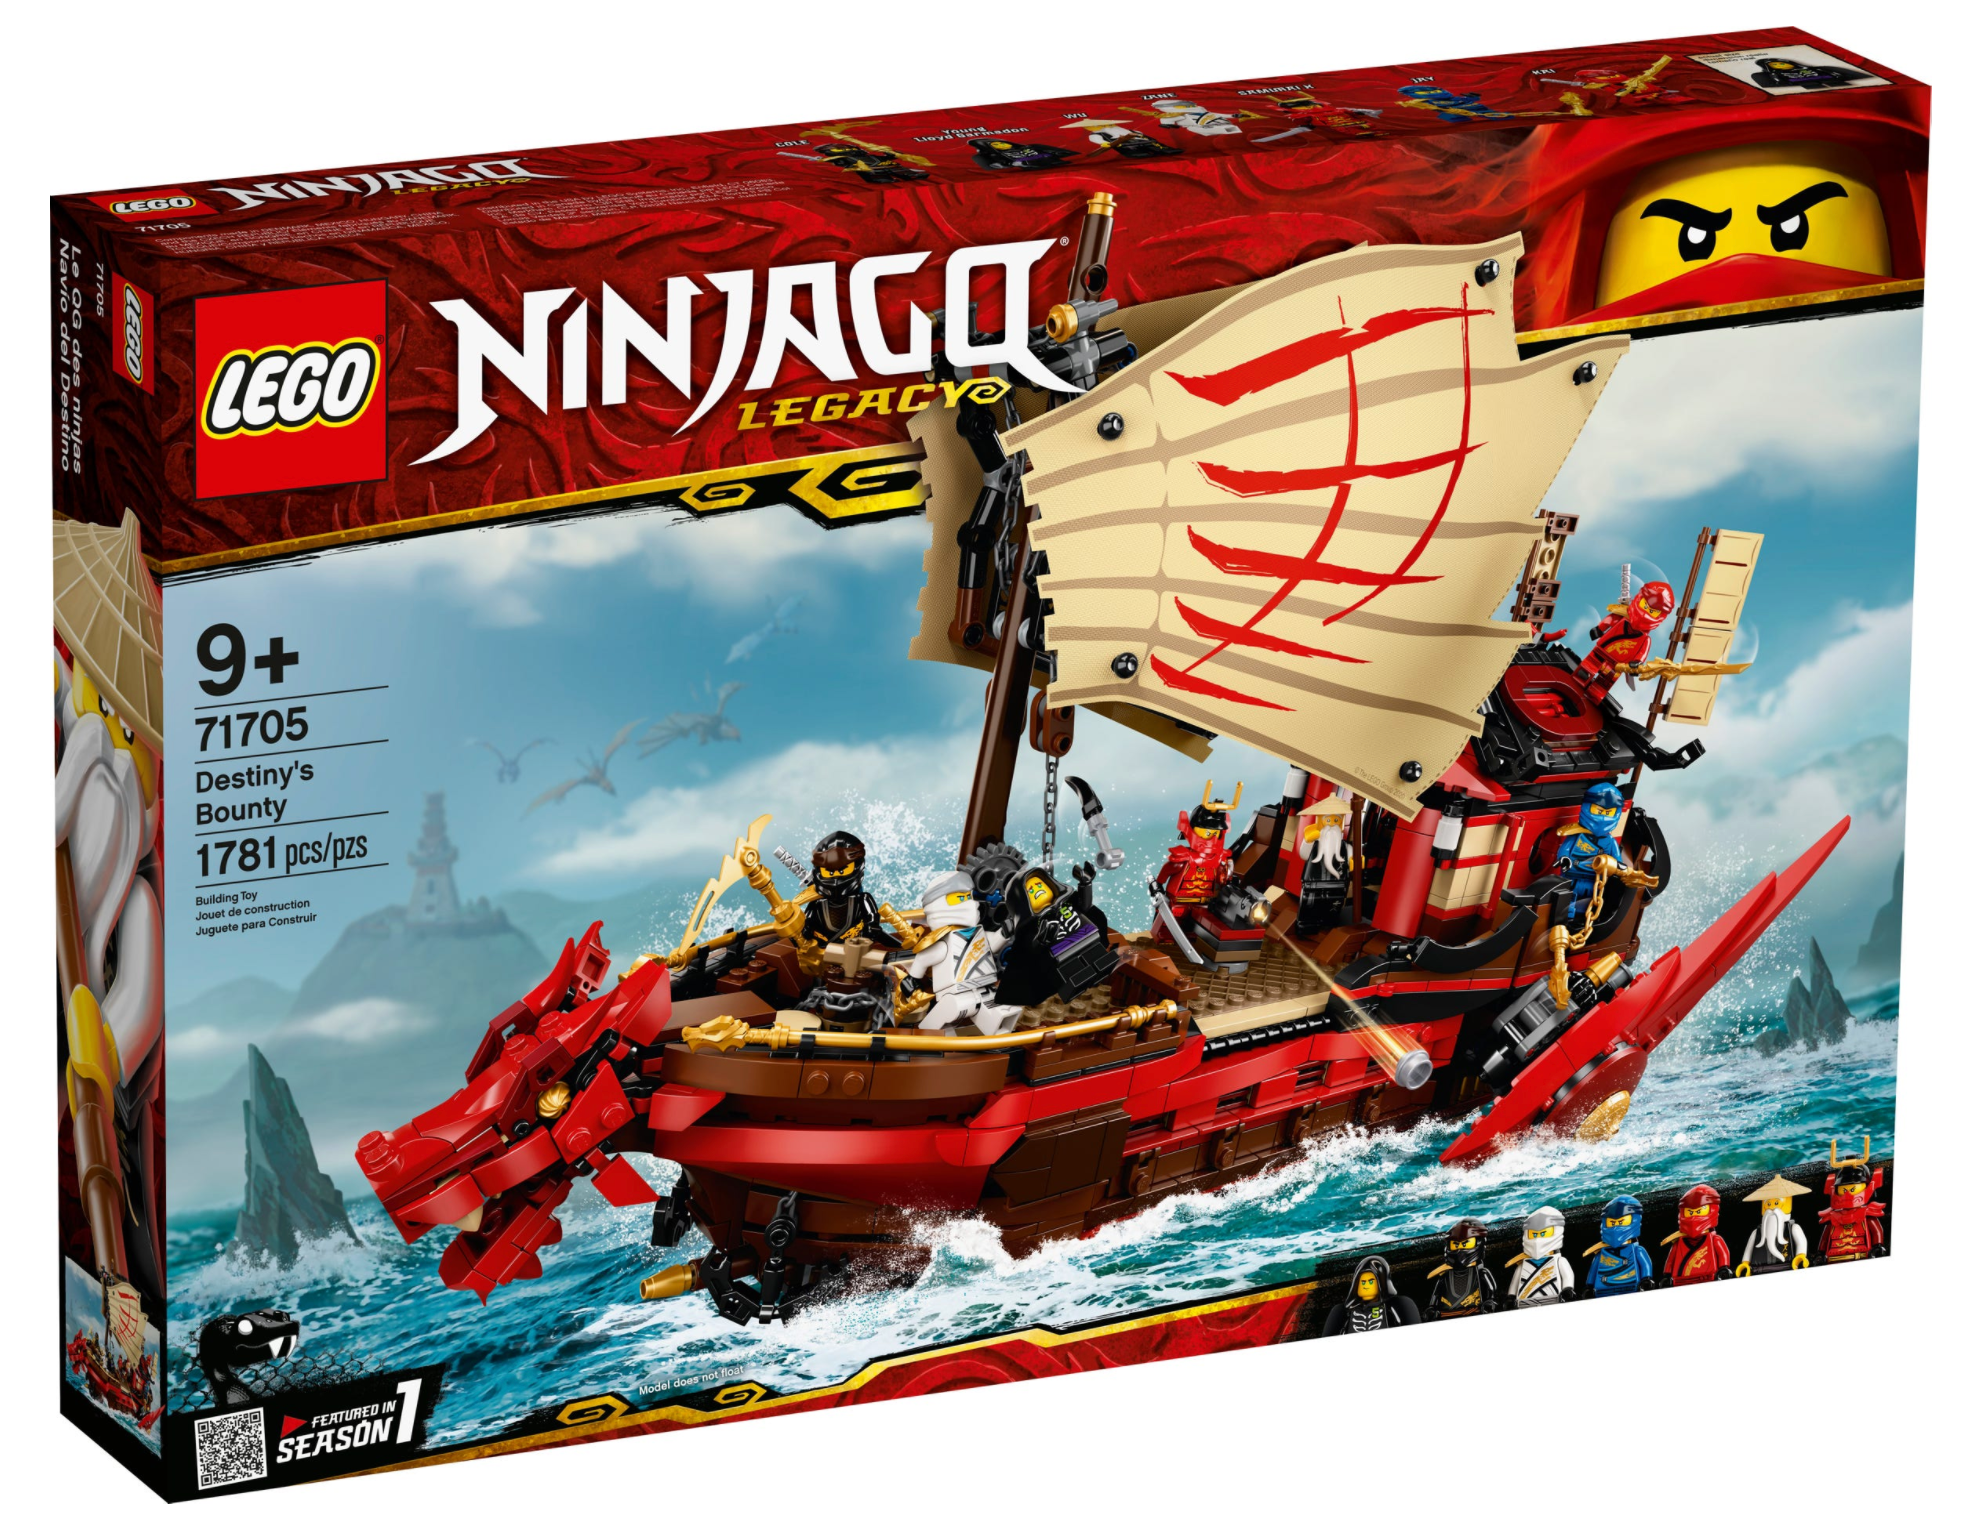 LEGO: Ninjago - Destiny's Bounty